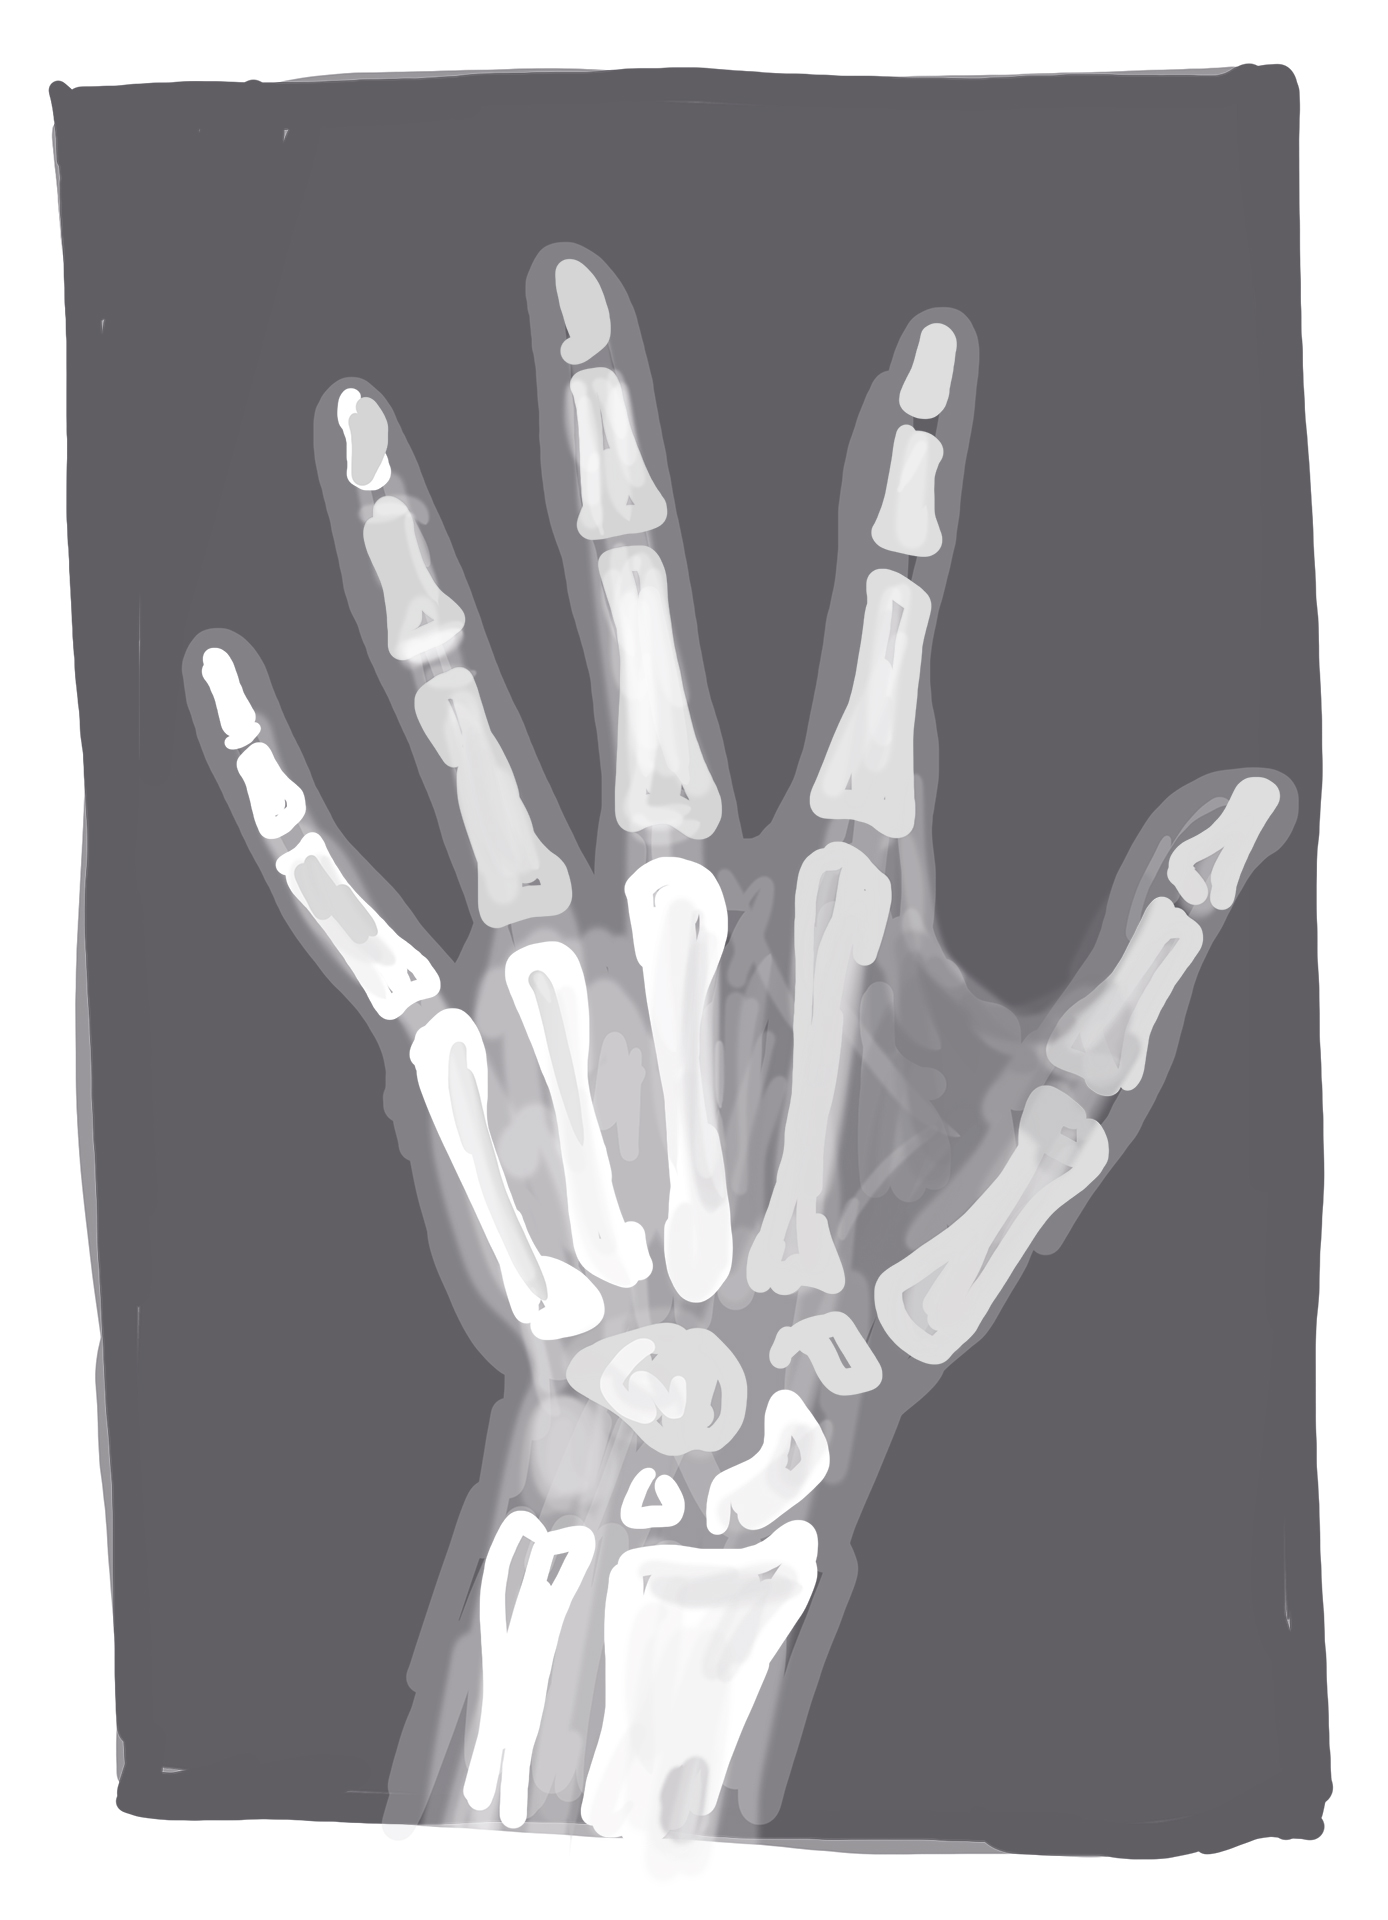 Die Röntgenaufnahme einer Hand